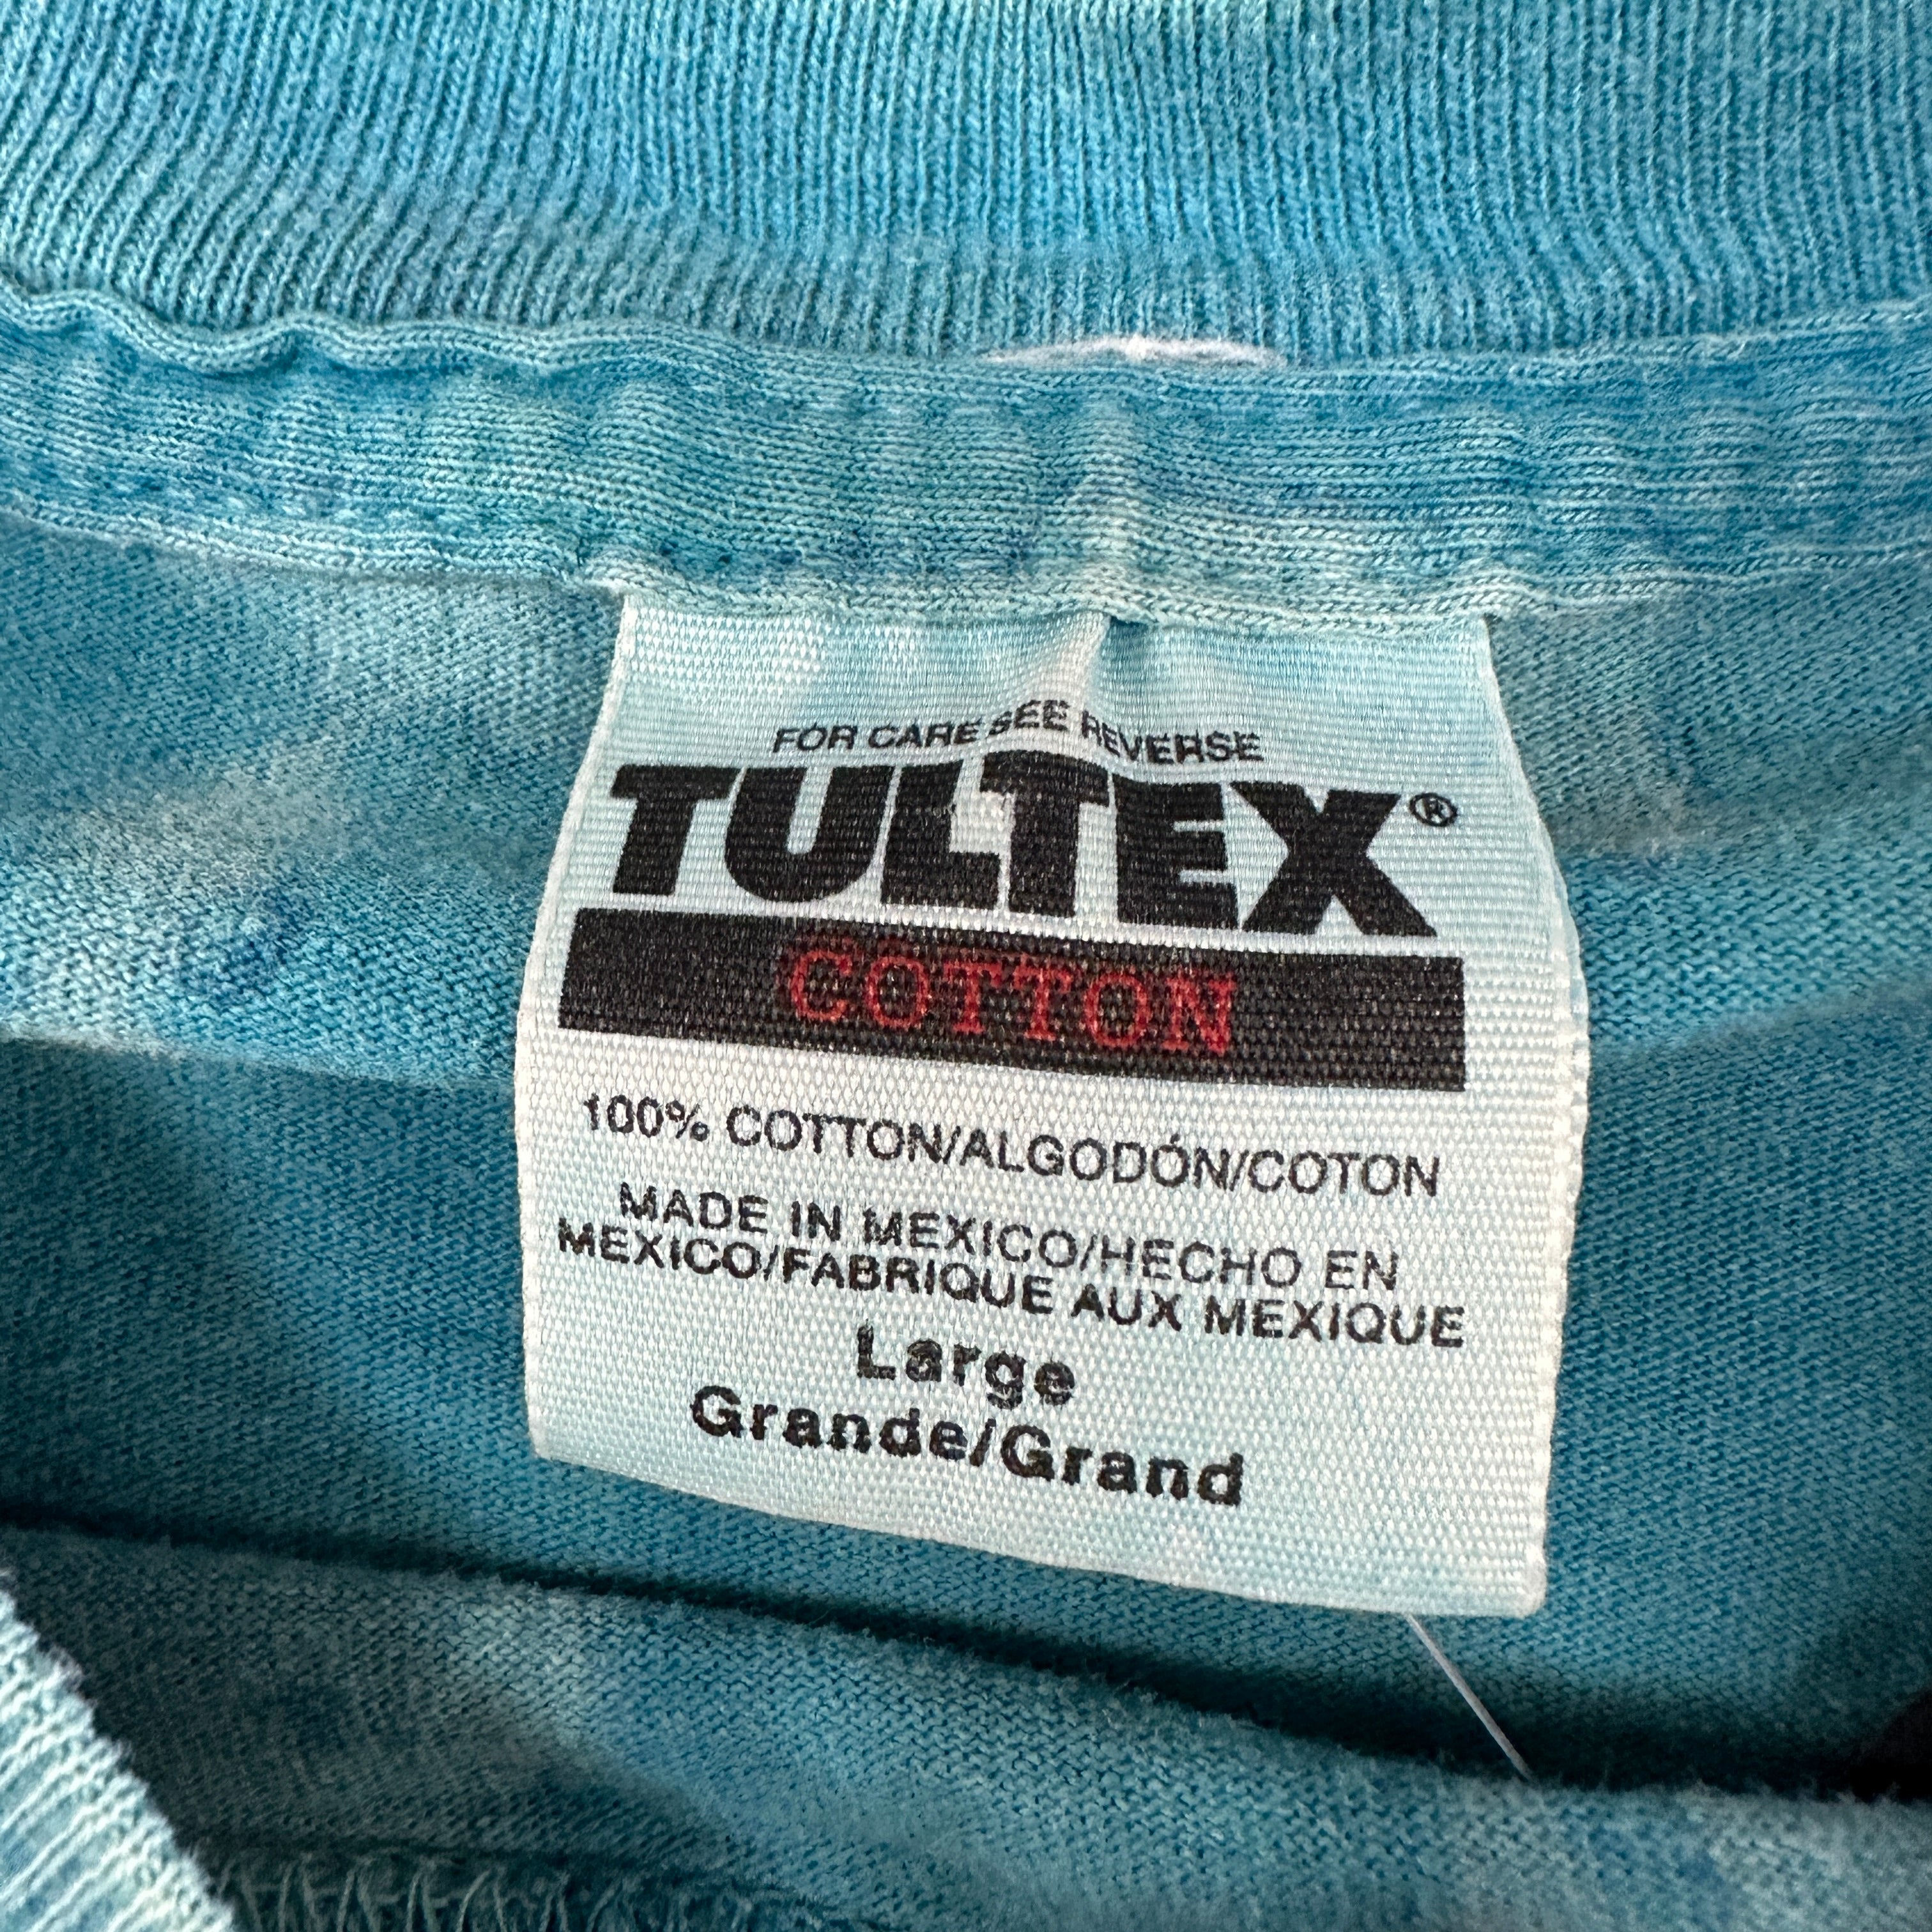 Vintage 90's Jaguars Spellout Tie Dye T-Shirt Large – KOLLECT